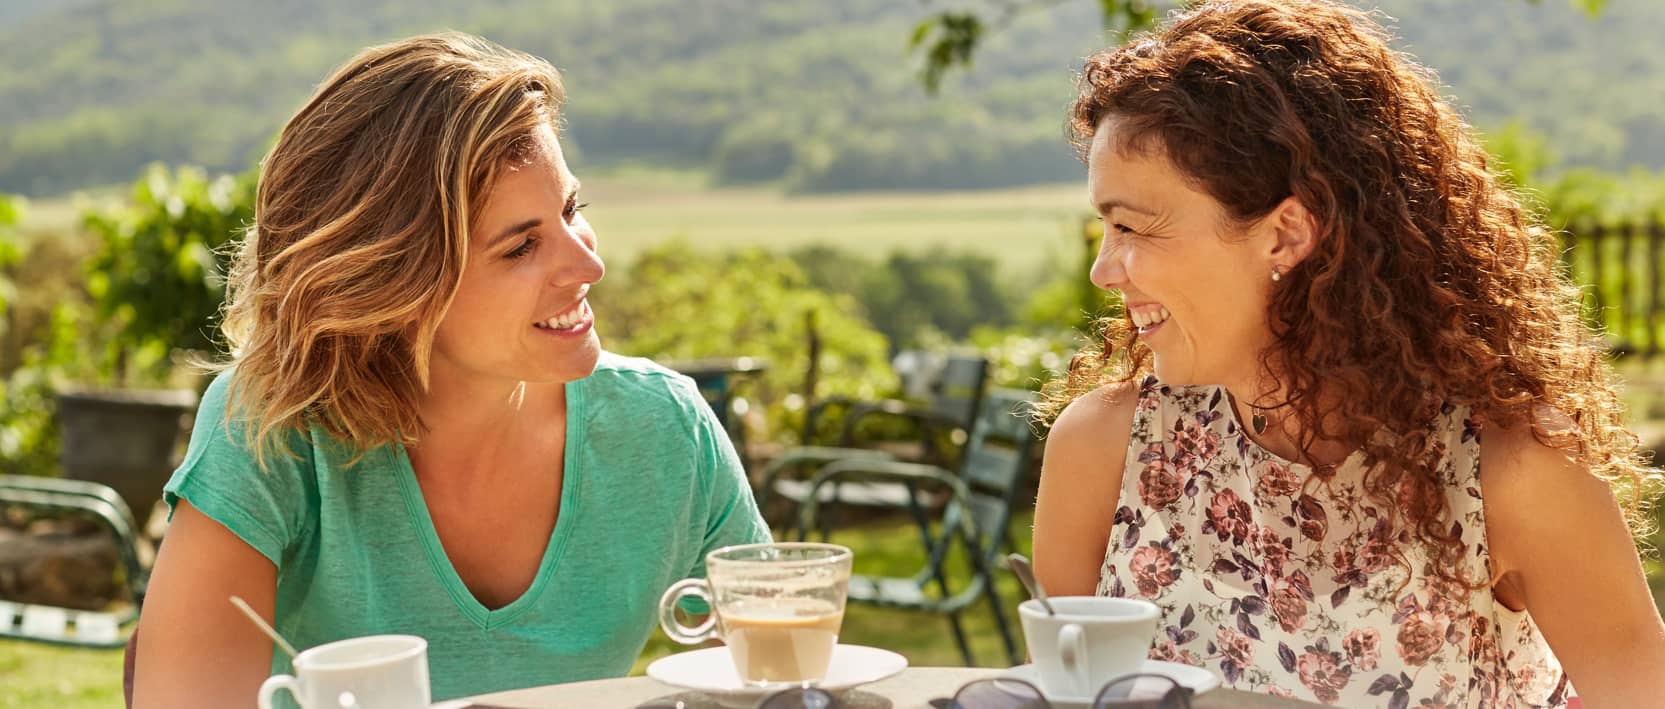 Deux amies buvant un café sur une terrasse. Cliquez pour découvrir notre Programme recommandez un ami.